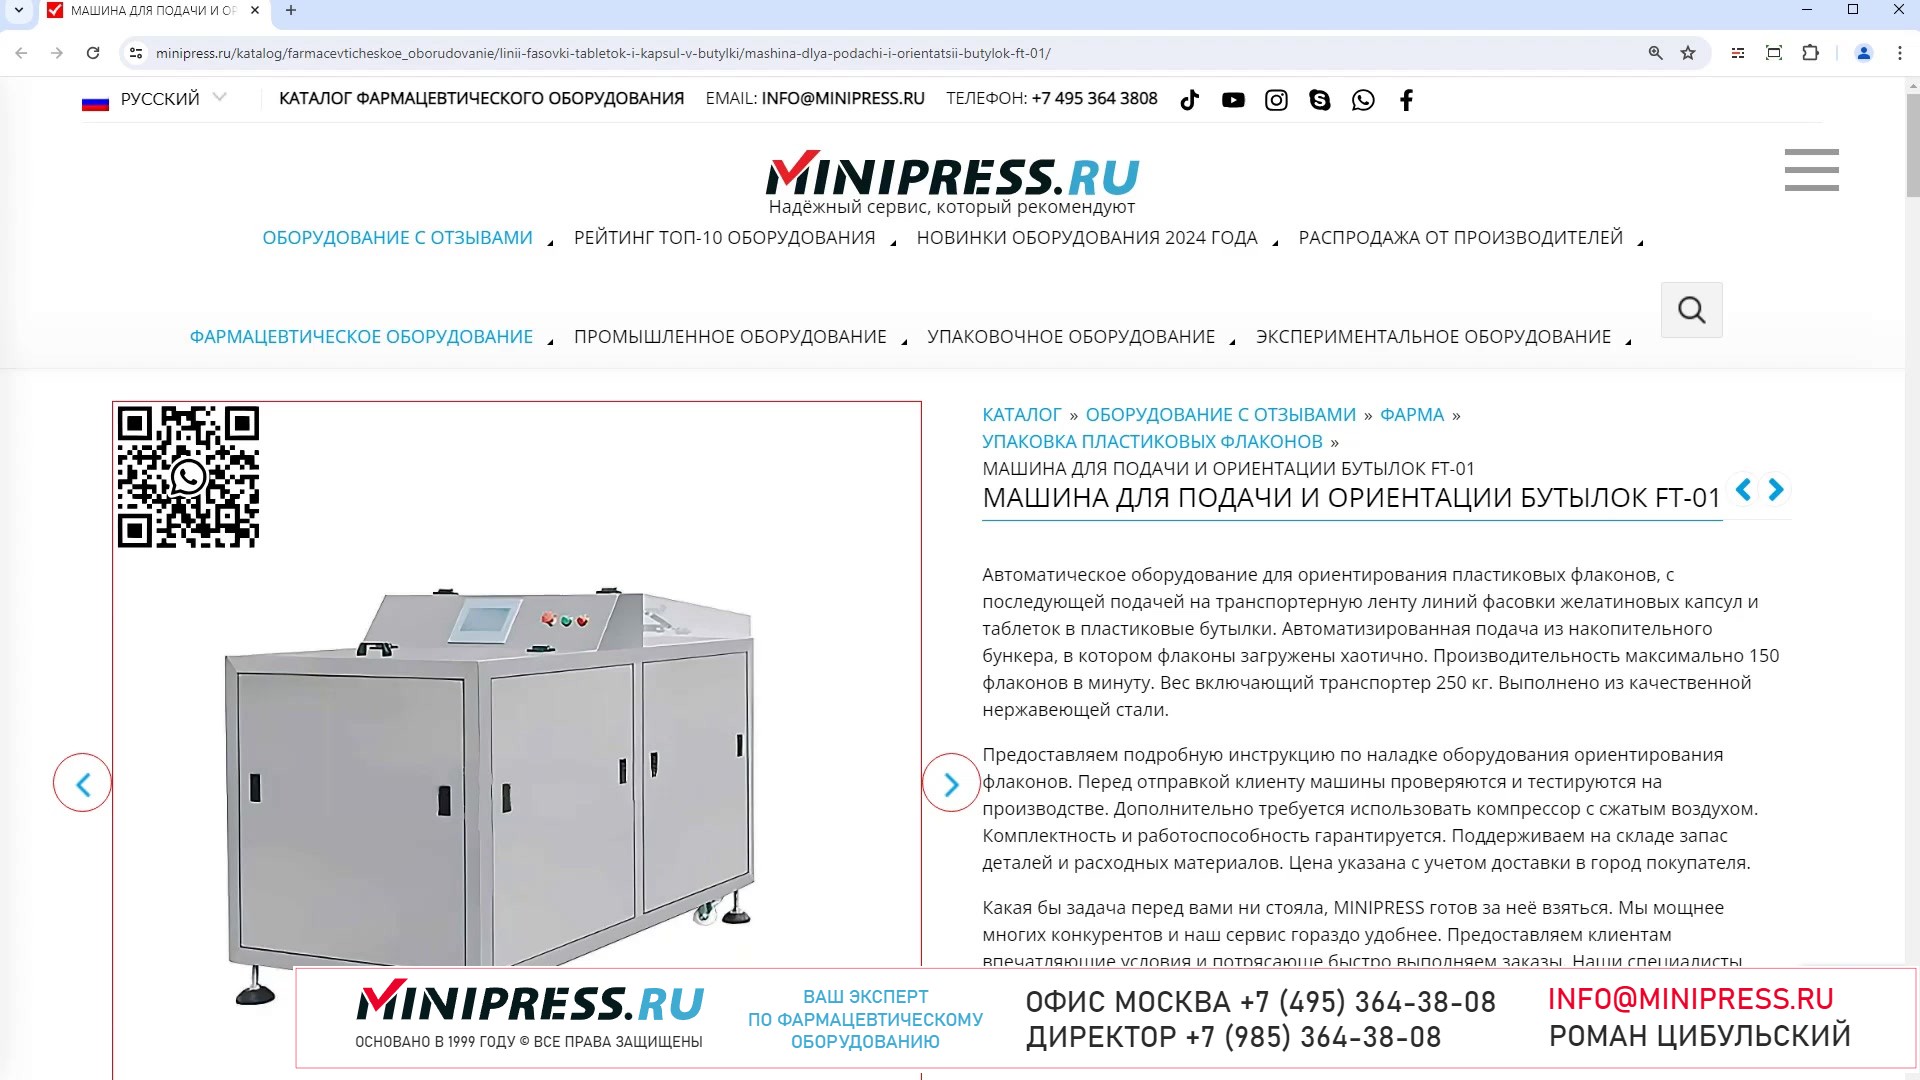 Minipress.ru Машина для подачи и ориентации бутылок FT-01